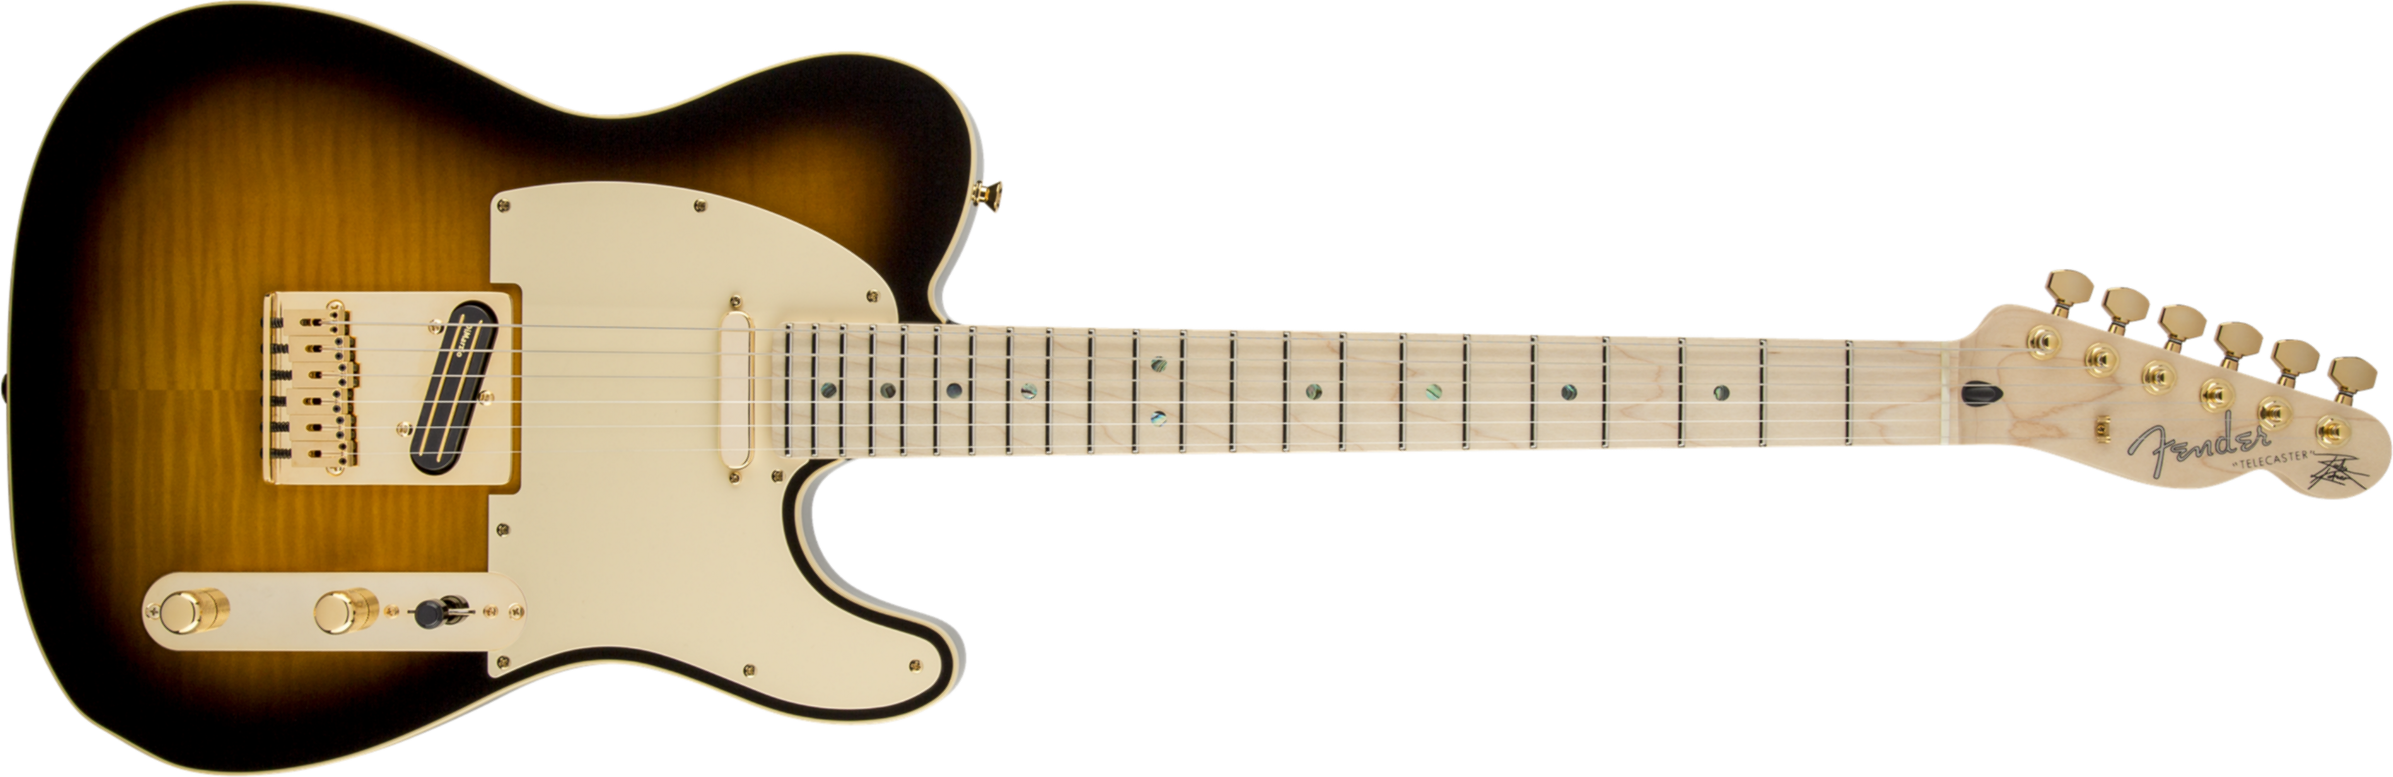 Fender Telecaster Richie Kotzen (jap, Mn) - Brown Sunburst - Televorm elektrische gitaar - Main picture